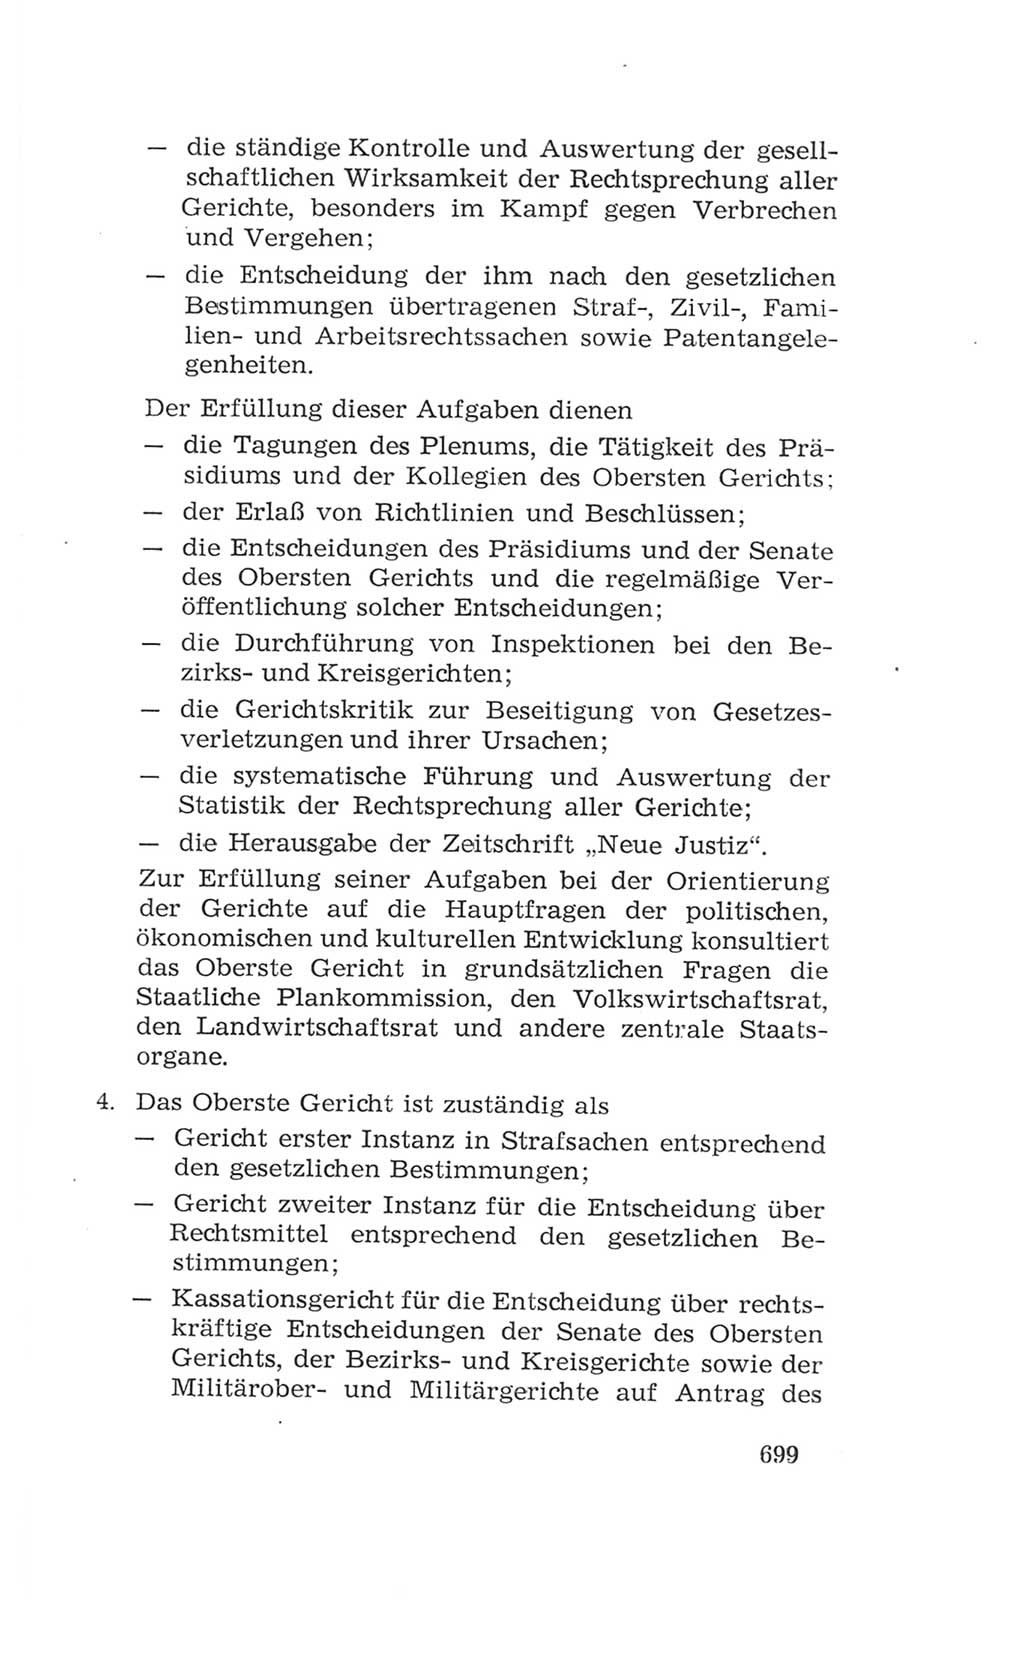 Volkskammer (VK) der Deutschen Demokratischen Republik (DDR), 4. Wahlperiode 1963-1967, Seite 699 (VK. DDR 4. WP. 1963-1967, S. 699)